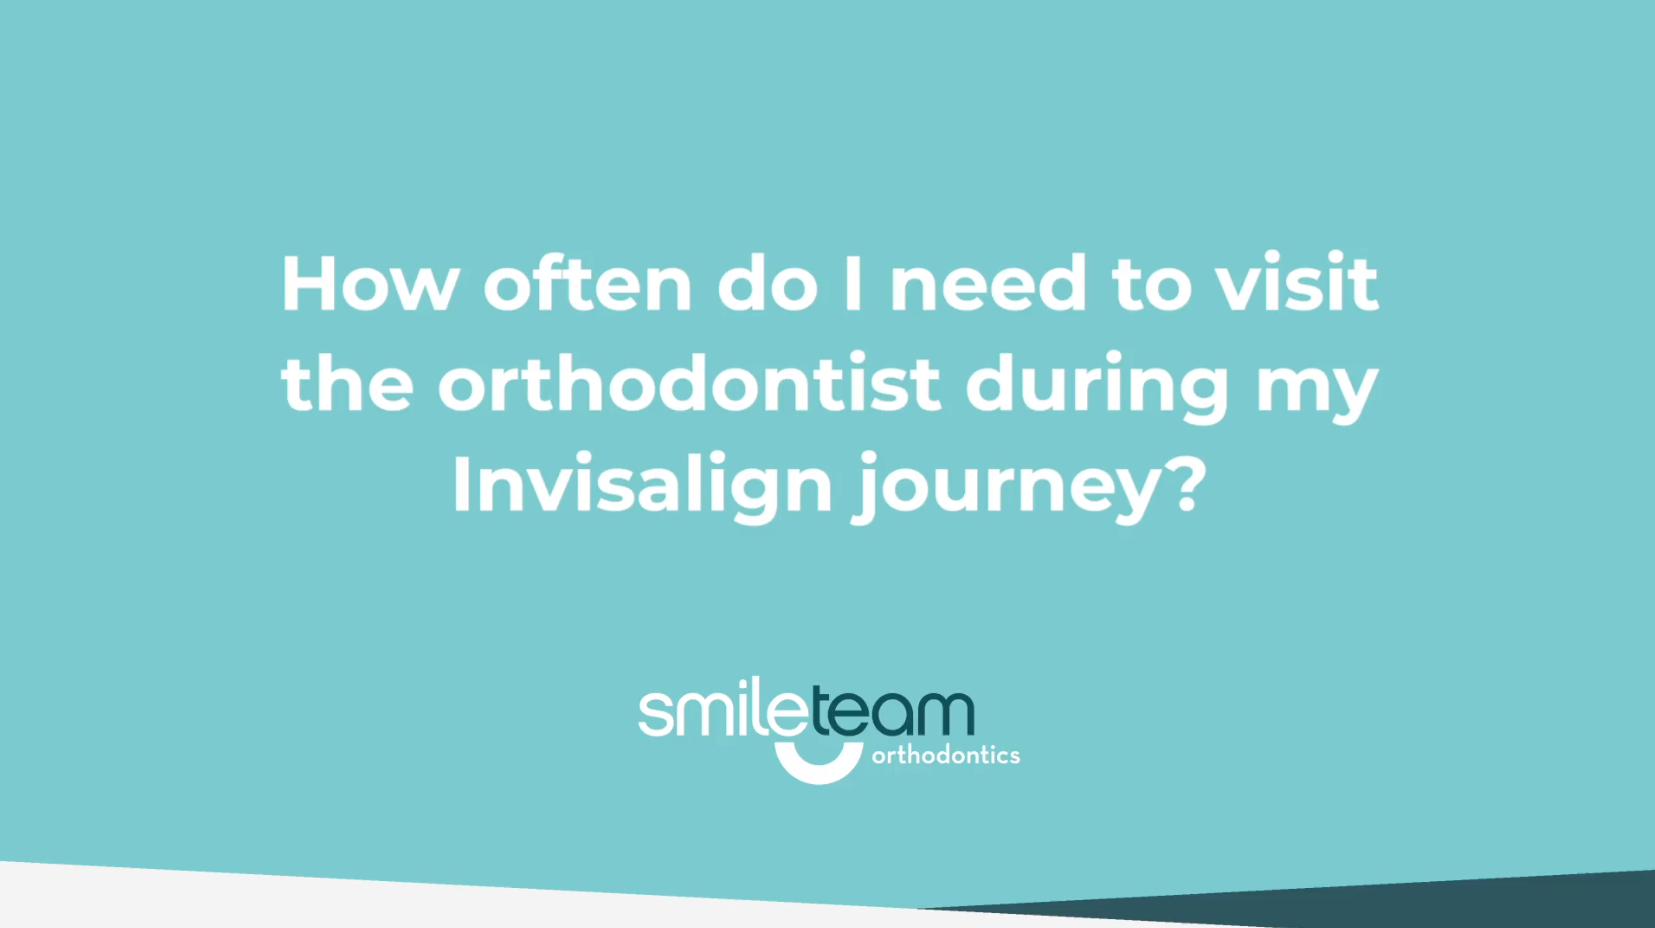 How often do I visit the orthodontist?